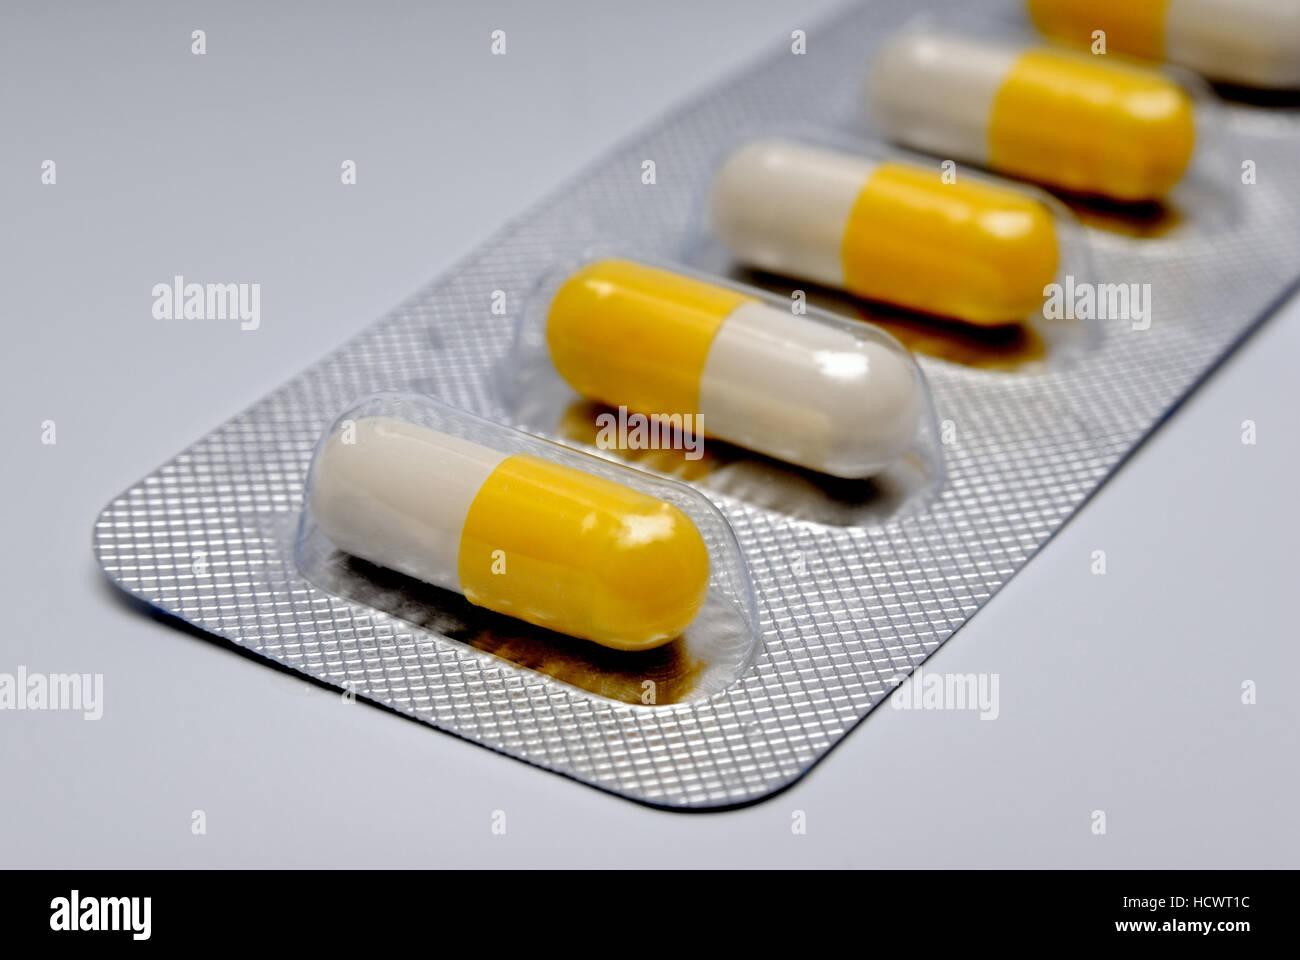 Kapseln mit einem Medikament in der Verpackung, Tabletten Stockfotografie -  Alamy